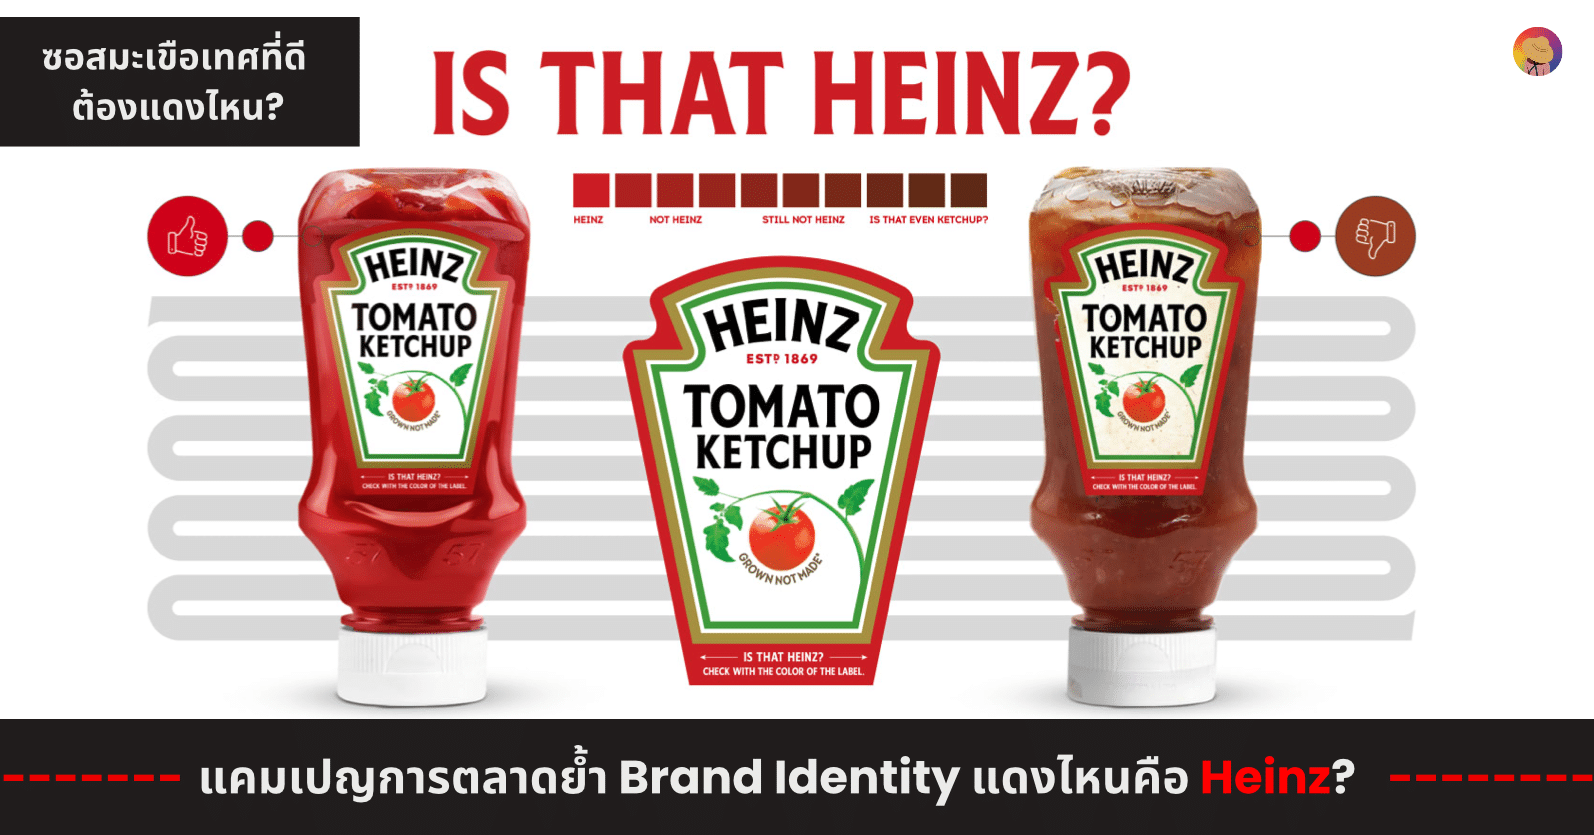 แคมเปญการตลาด Heinz ย้ำ Brand Identity ซอสมะเขือเทศสีแดงไหน?! ที่เป็นของเรา